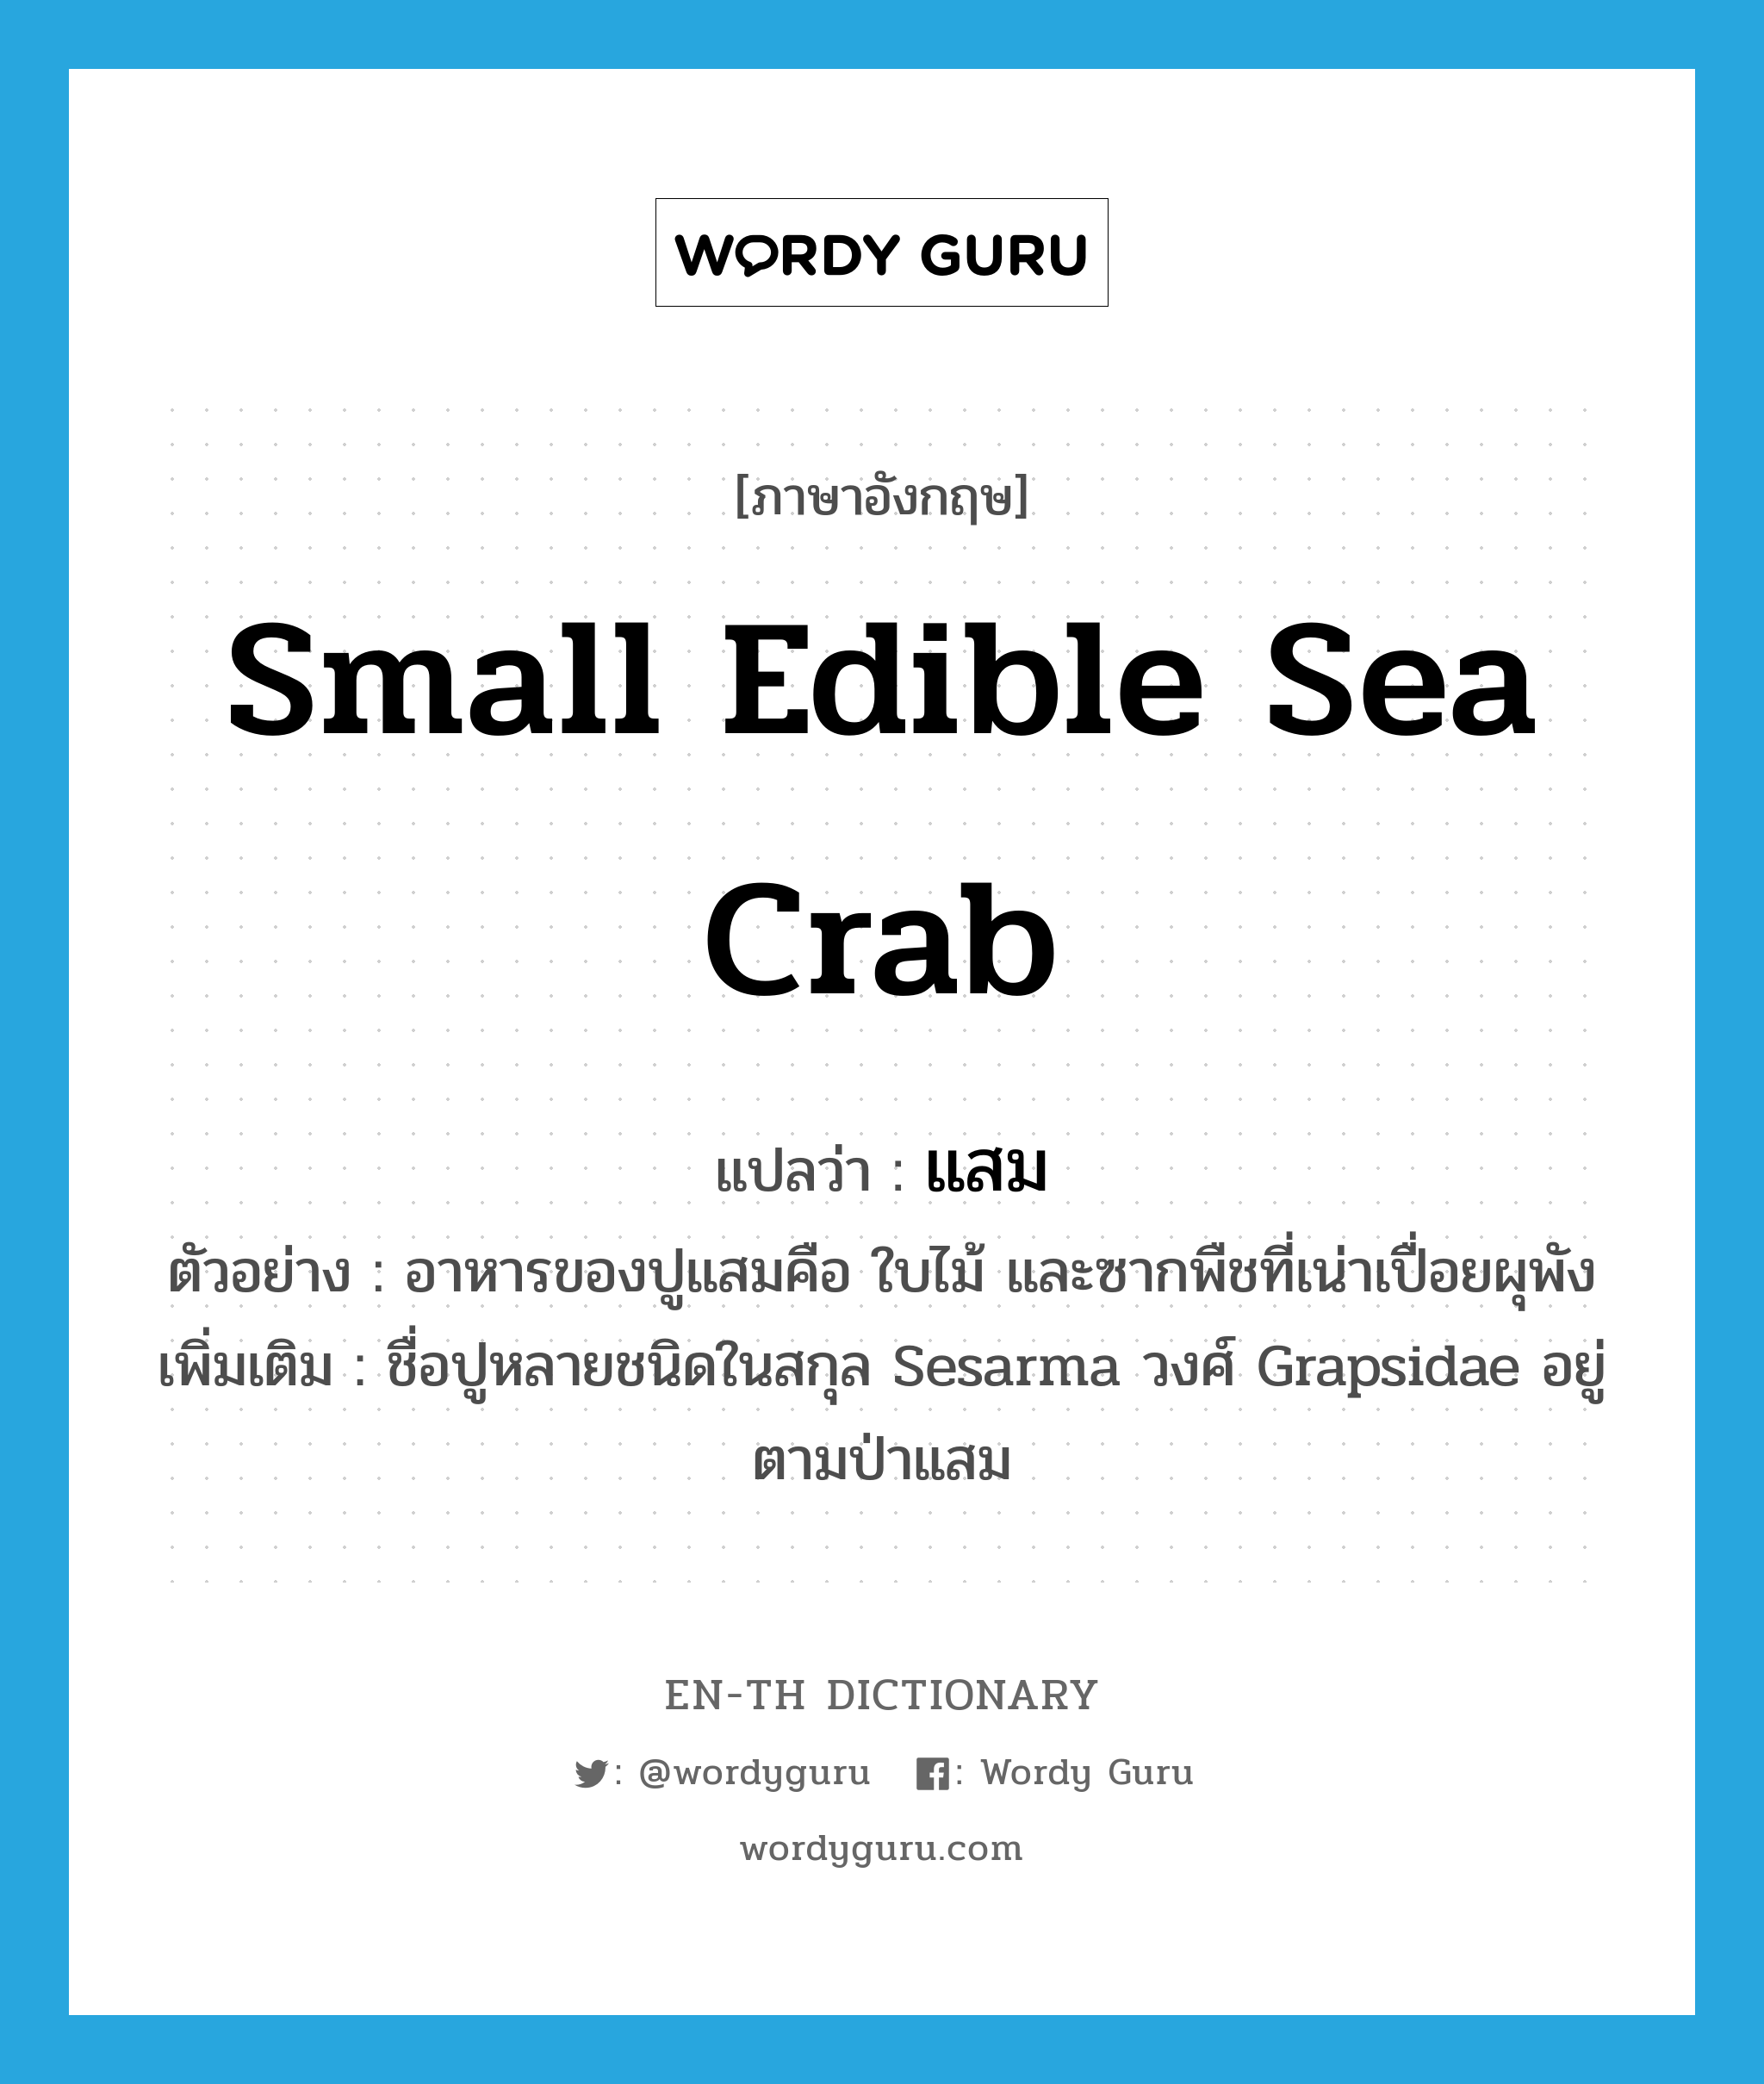 small edible sea crab แปลว่า?, คำศัพท์ภาษาอังกฤษ small edible sea crab แปลว่า แสม ประเภท N ตัวอย่าง อาหารของปูแสมคือ ใบไม้ และซากพืชที่เน่าเปื่อยผุพัง เพิ่มเติม ชื่อปูหลายชนิดในสกุล Sesarma วงศ์ Grapsidae อยู่ตามป่าแสม หมวด N